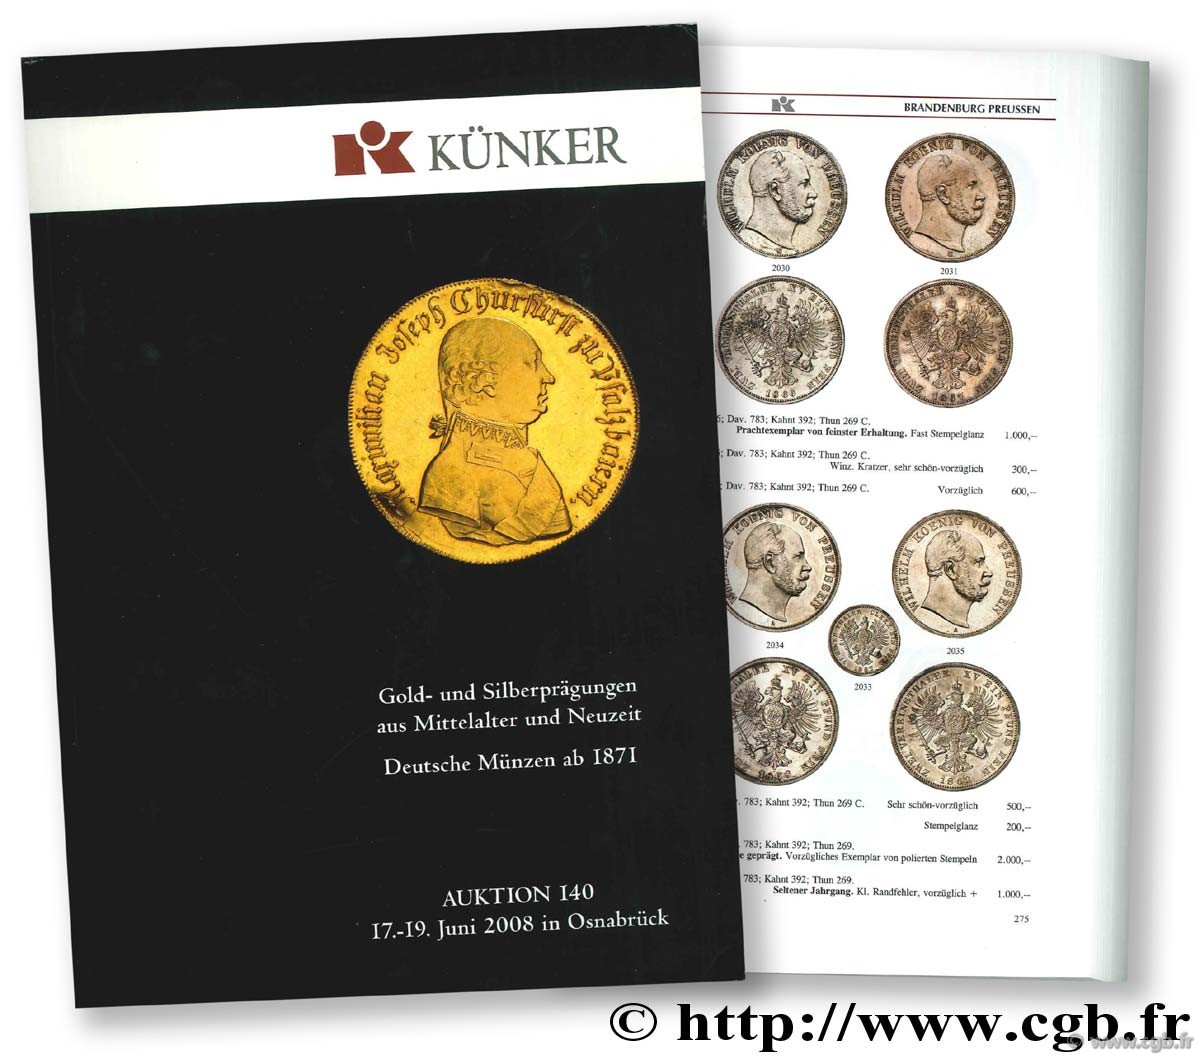 Gold und Silberprägungen aus Mittelalter und Neuzeit, Deutsche Münzen ab 1871, Auktion 140, 17-19 juni 2008 in Osnabrück KÜNKER